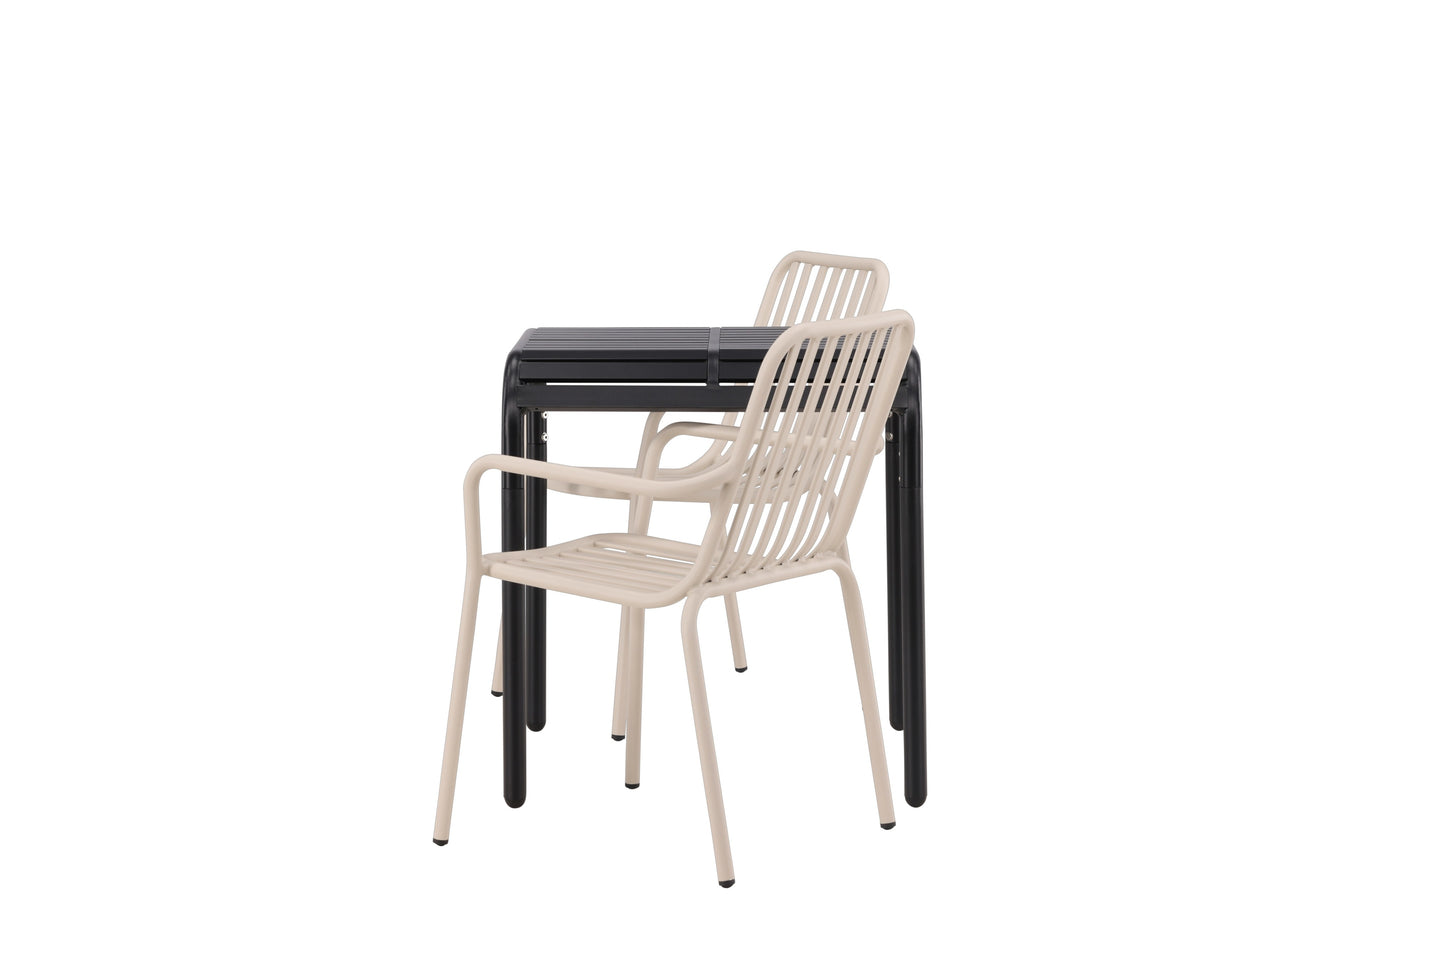 Borneo - Cafébord, Aluminium - Sort / Kvadrat 70*70* + Pekig stol Aluminium - Beige